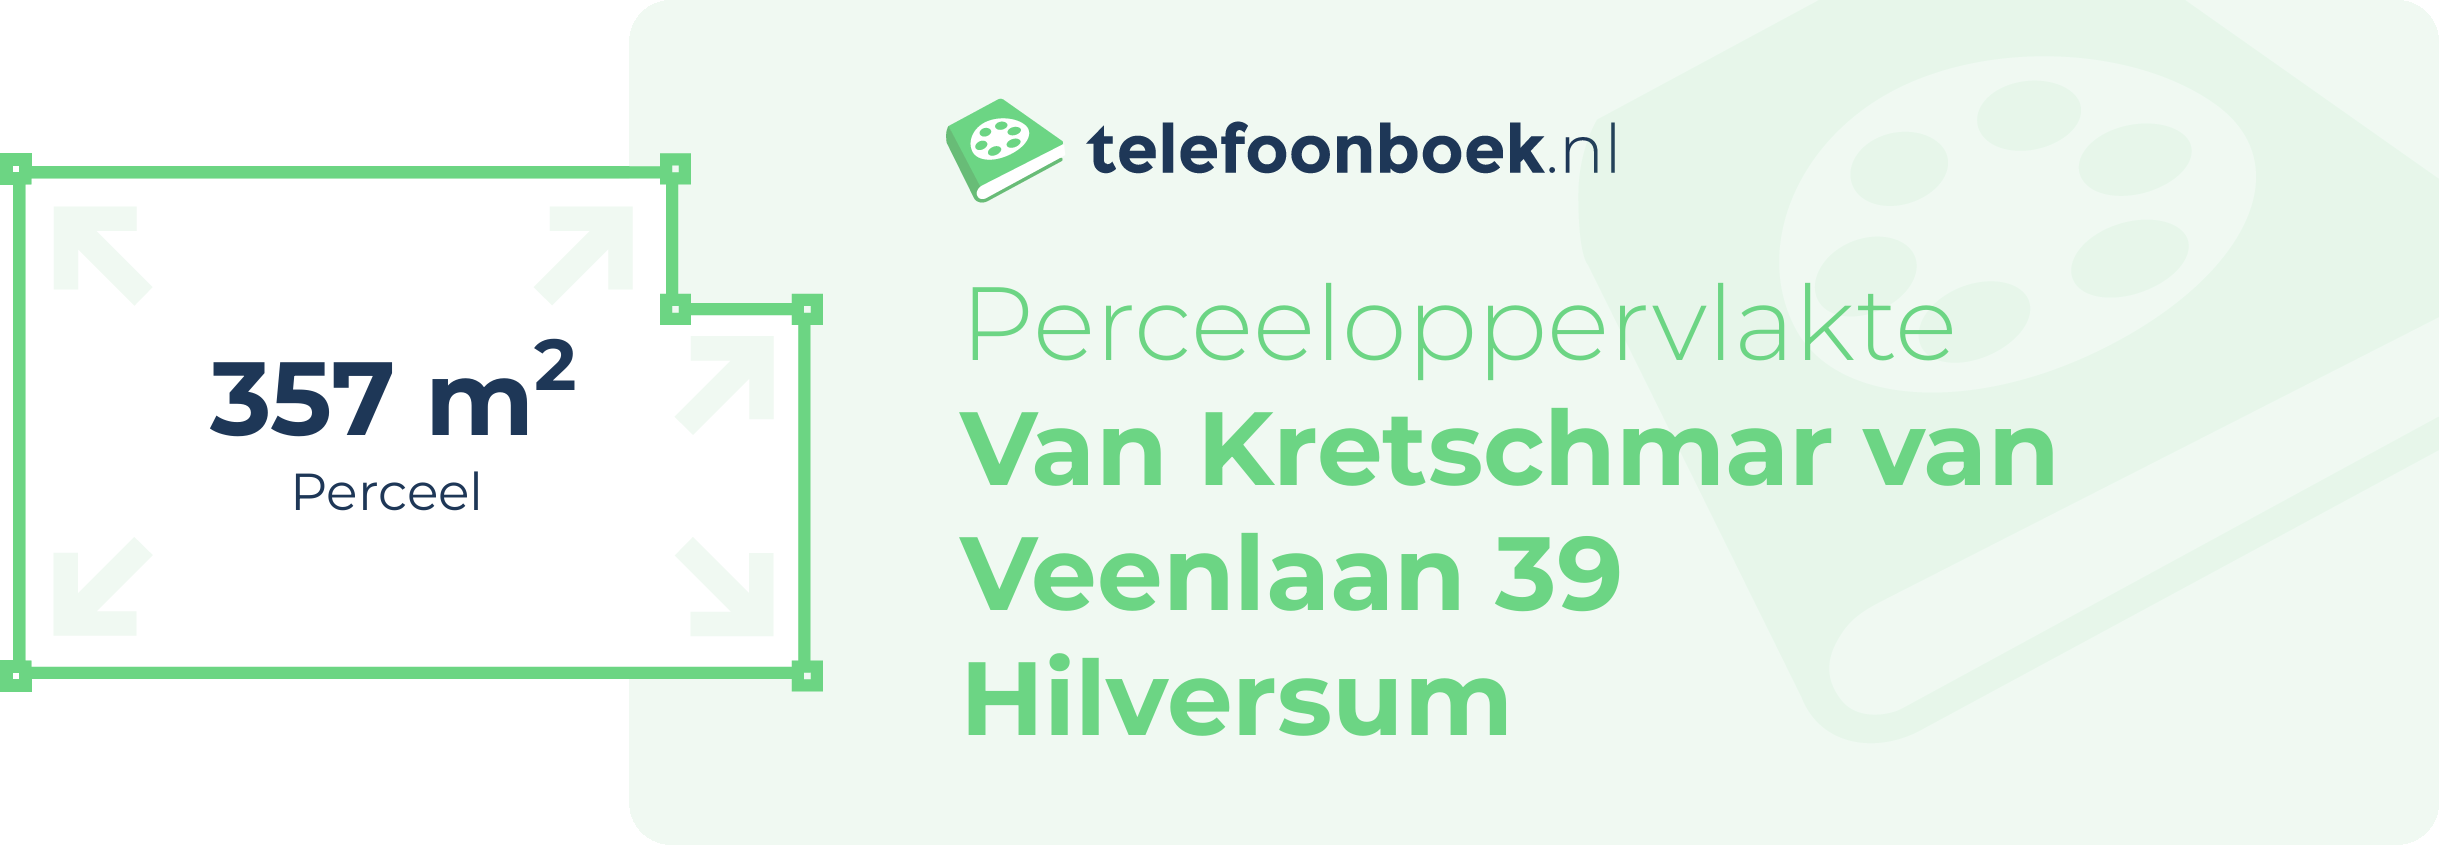 Perceeloppervlakte Van Kretschmar Van Veenlaan 39 Hilversum